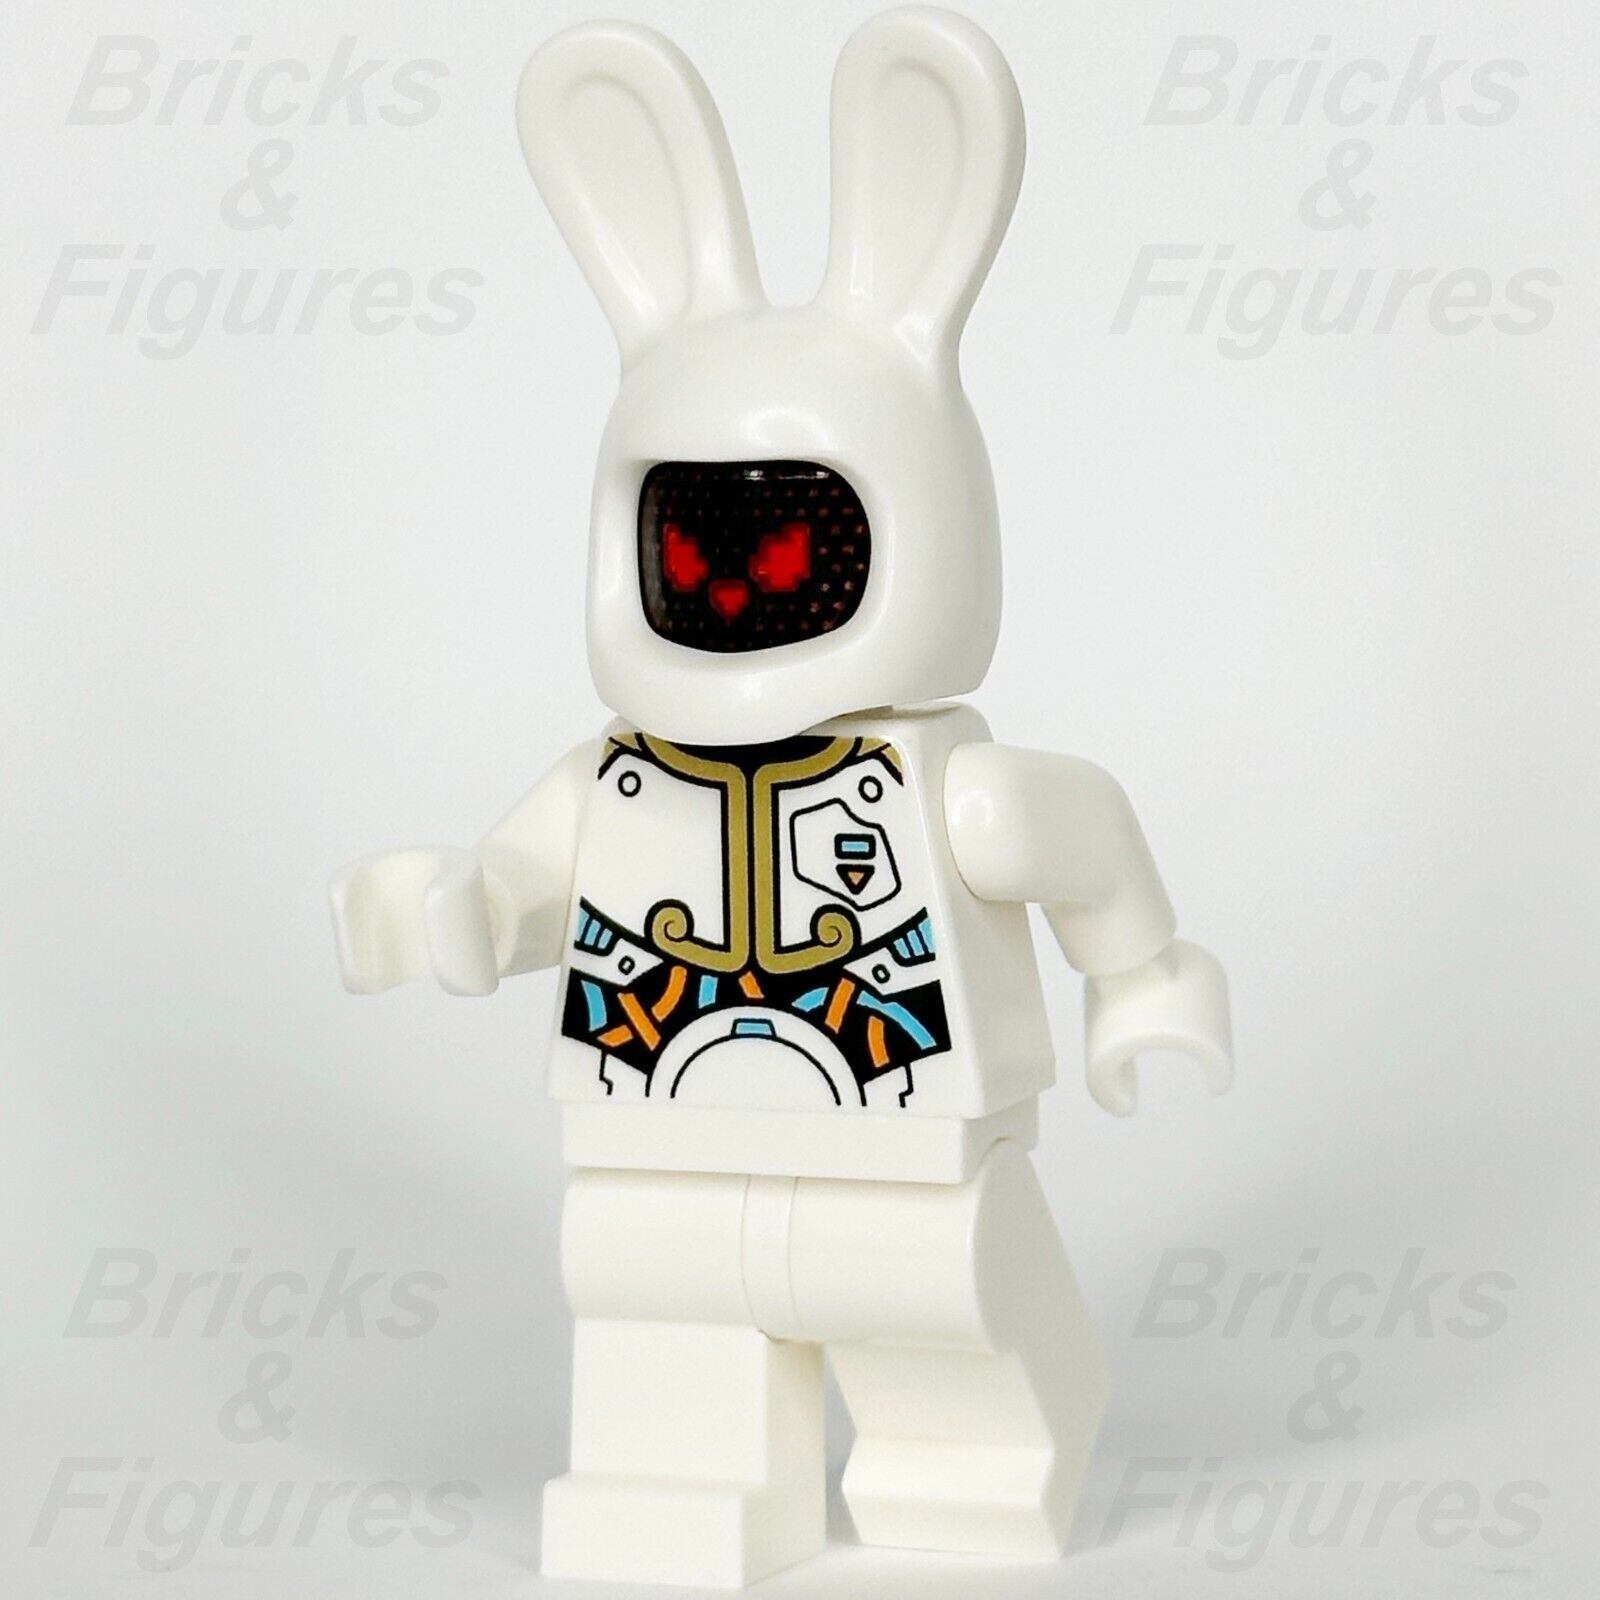 レゴ モンキー キッド 月面ウサギ ロボット ミニフィギュア 邪悪な怒っているハッピーフェイス 80032 mk081